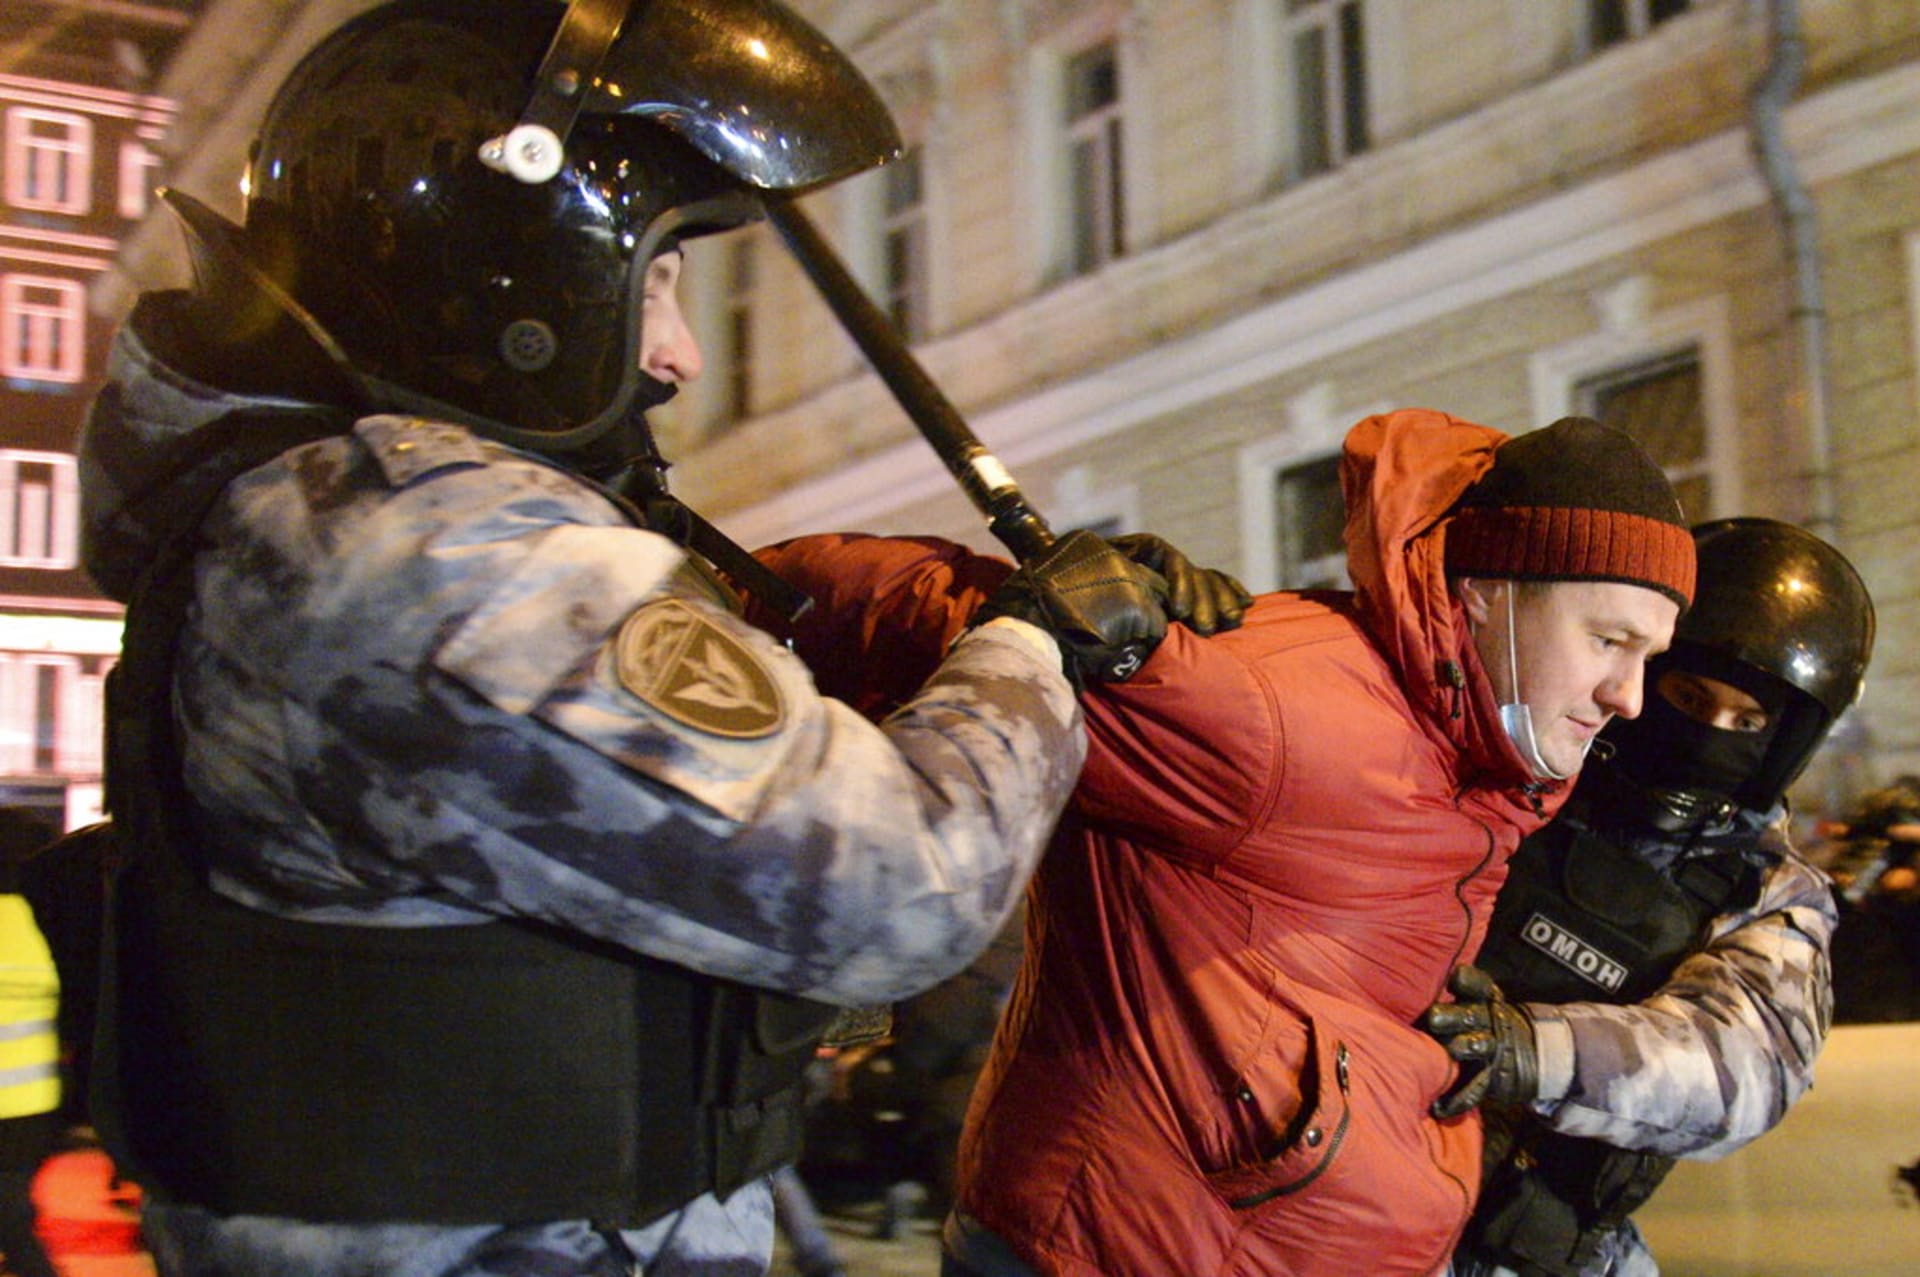 V hlavní městě policisté zatkli 2. února více než 1 100 demonstrujících. 